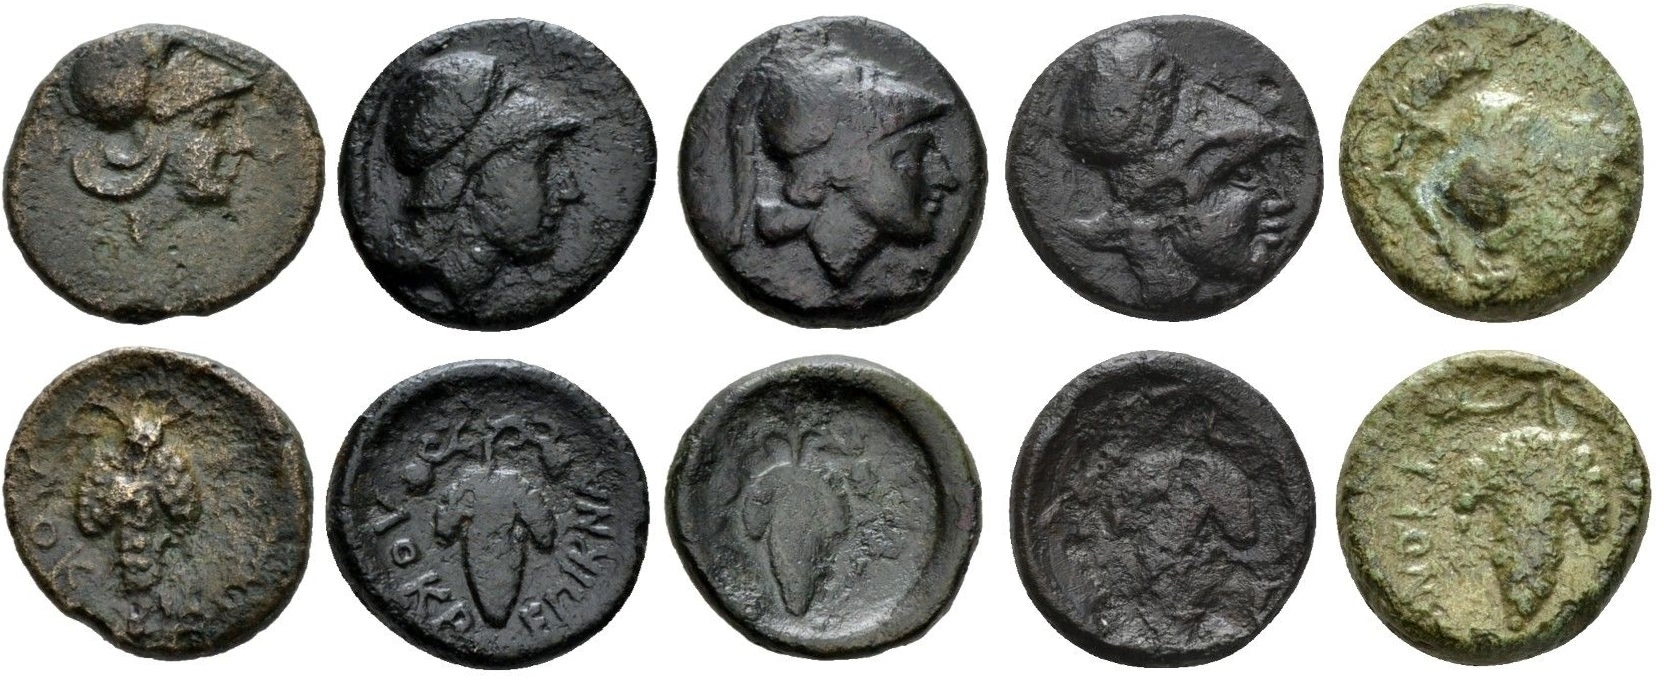 Humphis-Delbridge Plate Coins BCD Lokris Opunti Photos.jpg